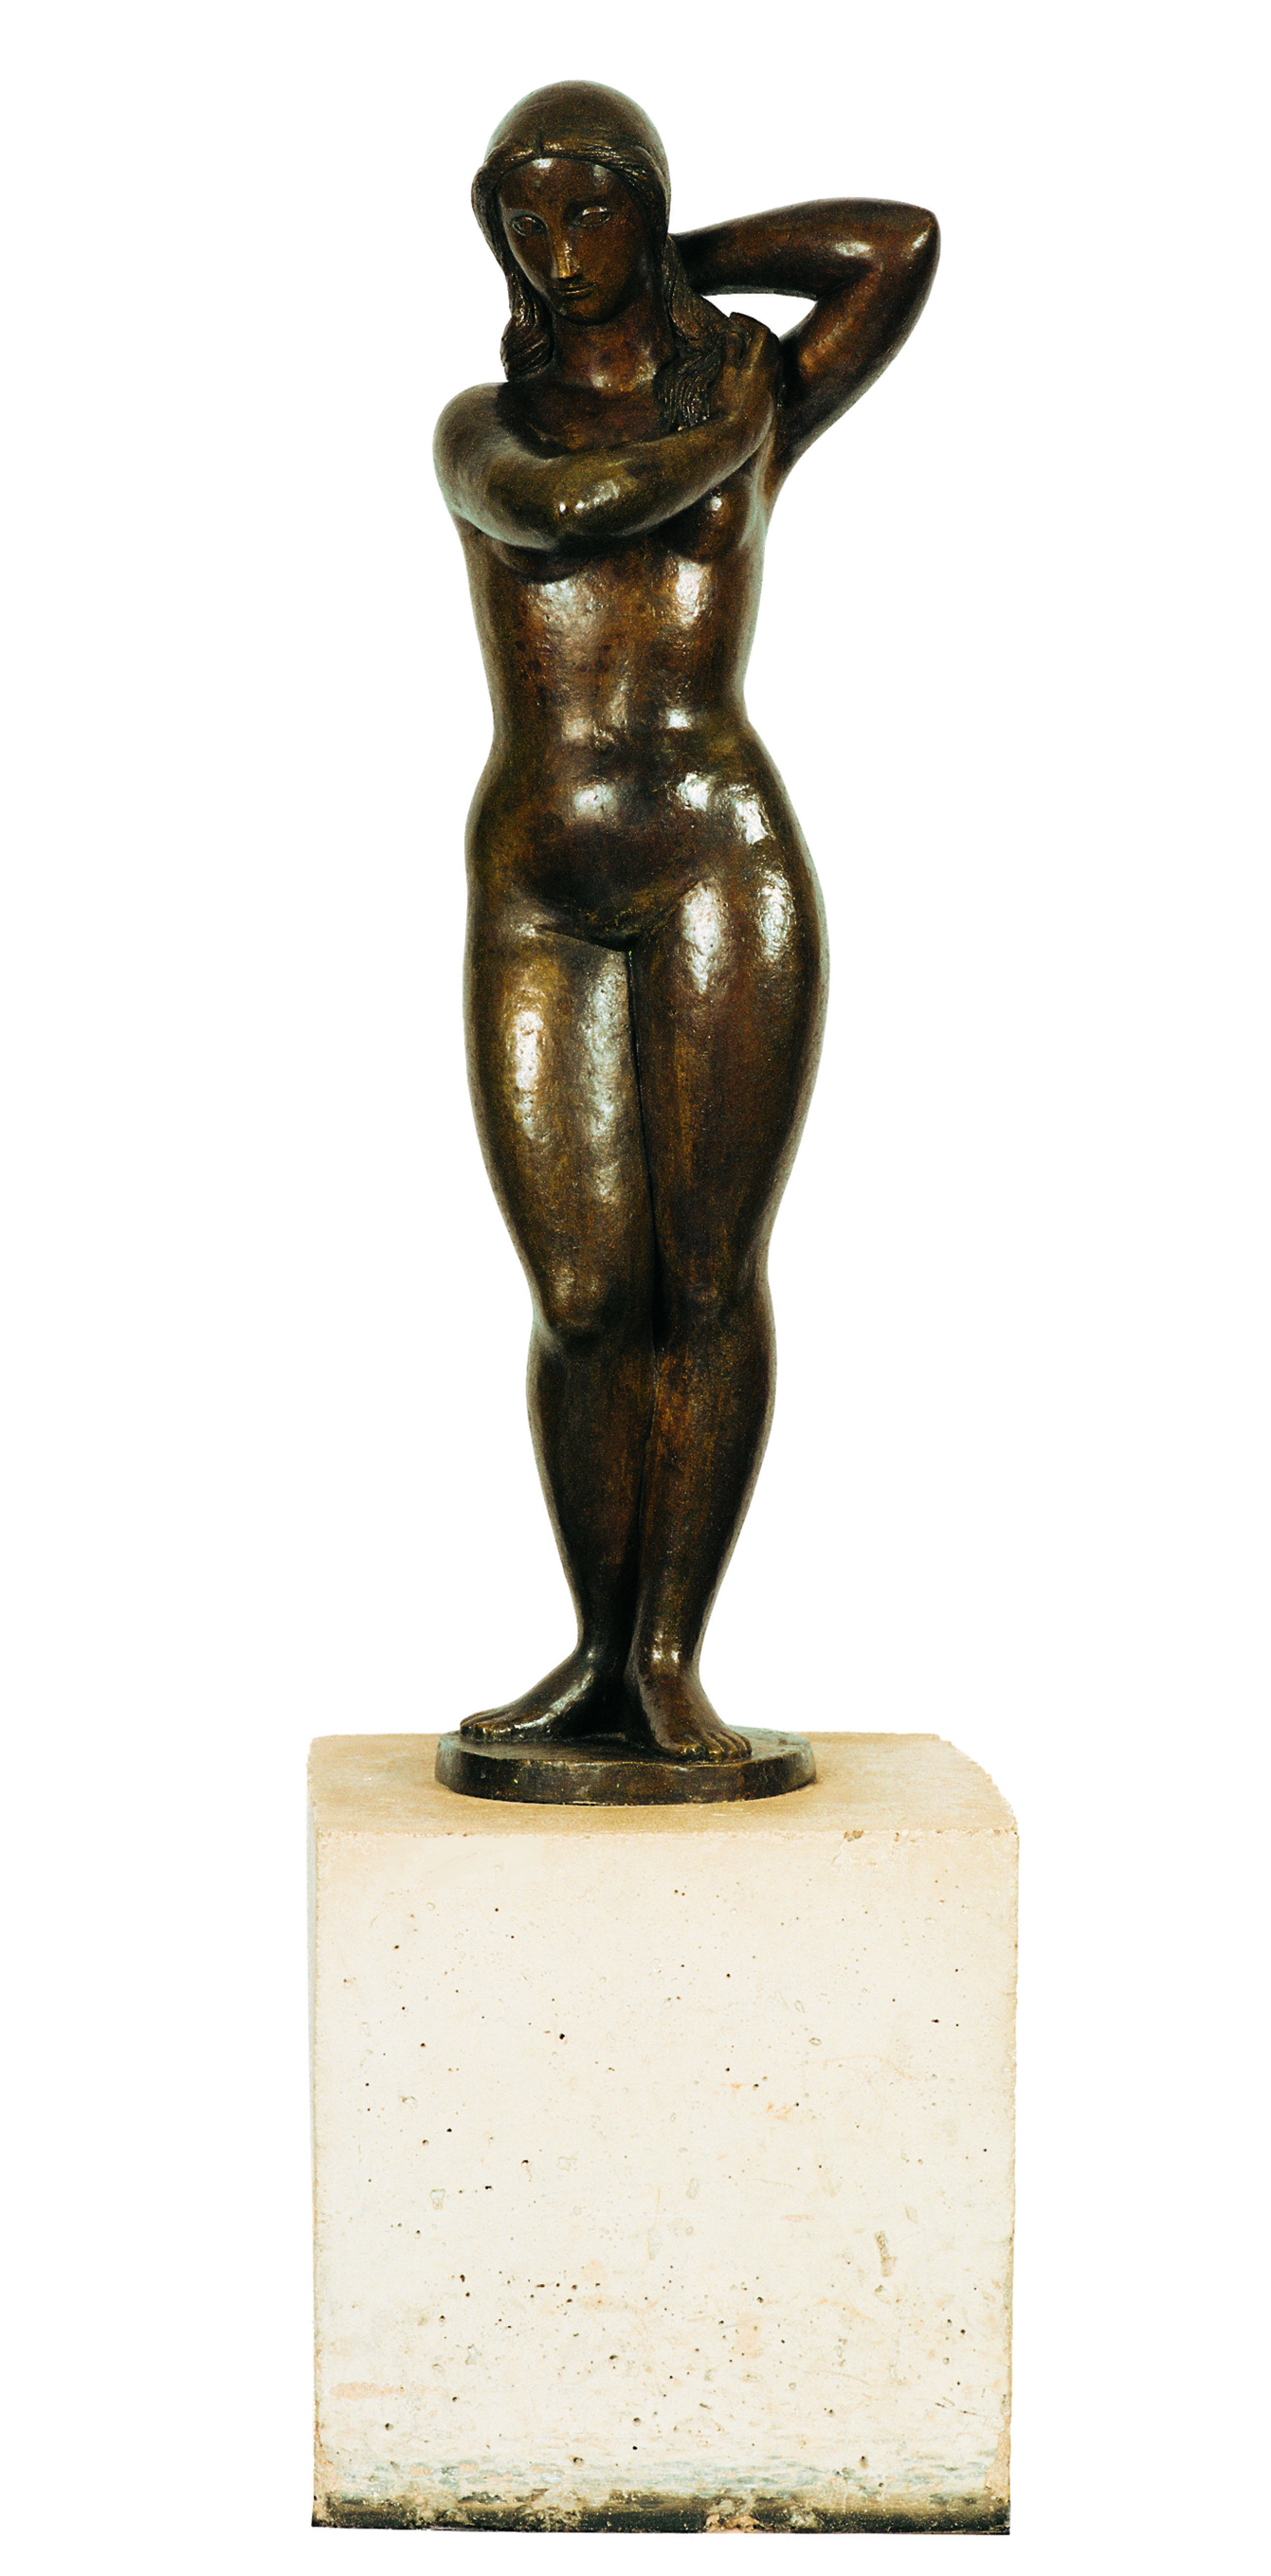 Mulher Nua Autor: Alfredo Ceschiatti Ano:1970 Técnica: escultura em bronze Dimensão: 150cm x 47cm x 35cm